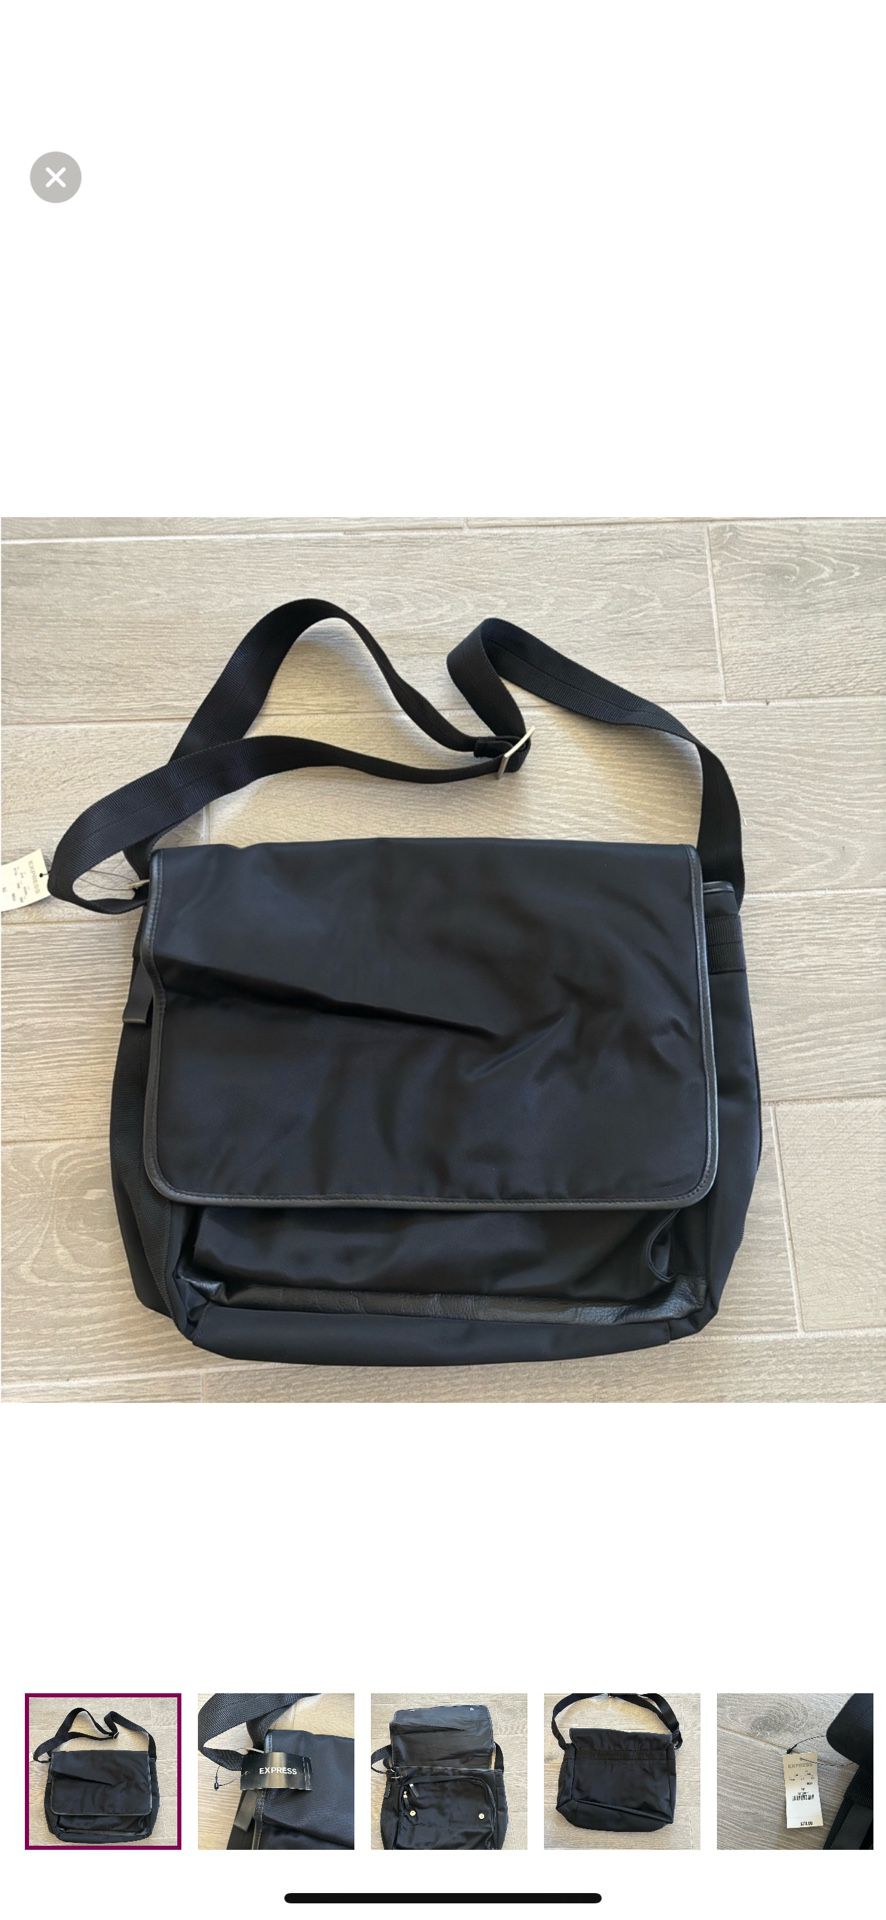 Express Briefcase Or Laptop Messenger Bag With Shoulder Strap